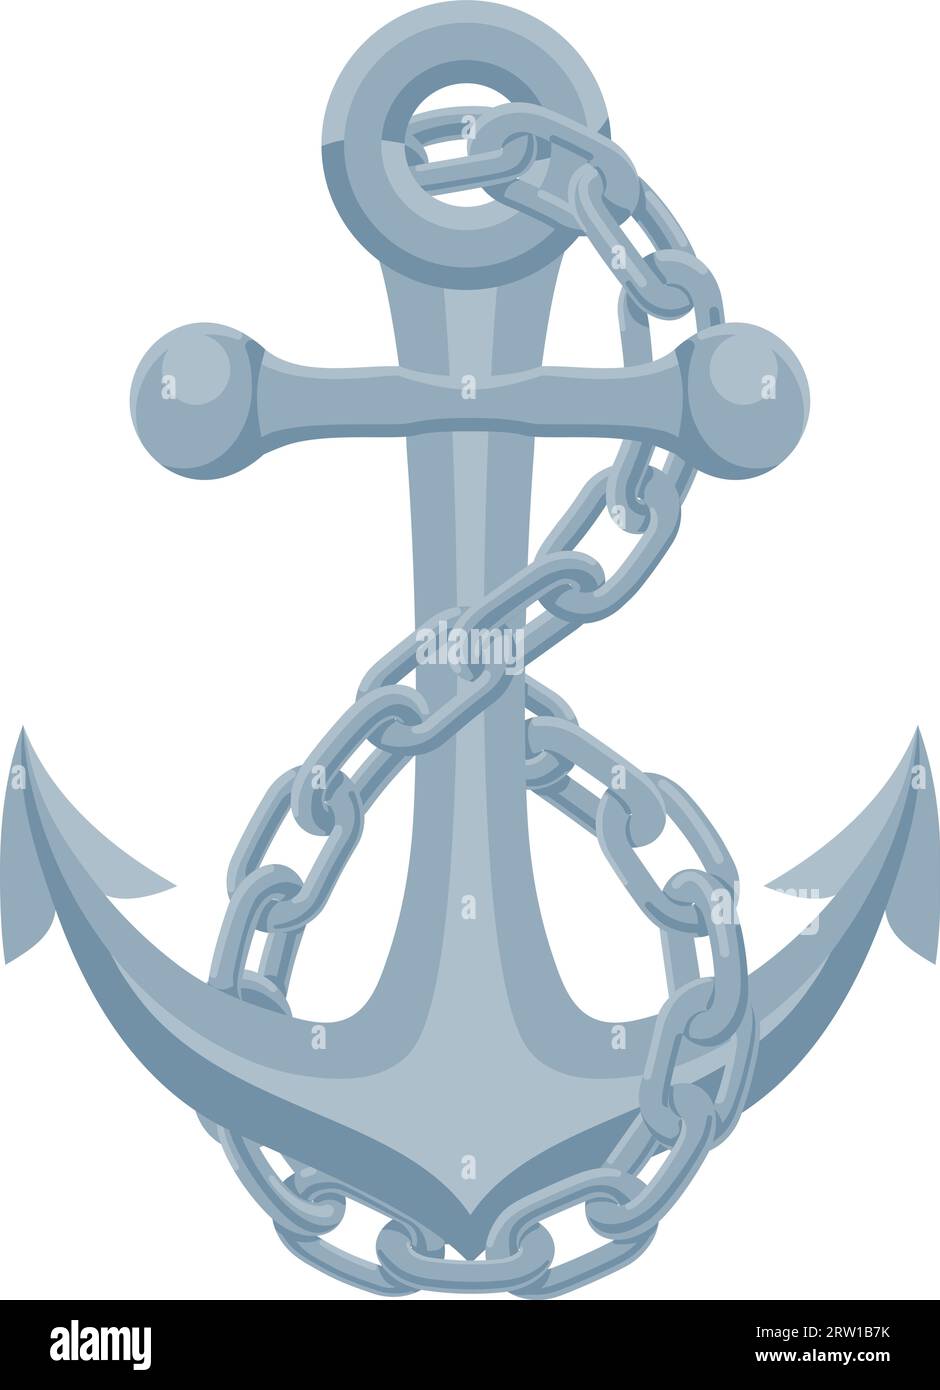 Barco de ancla de la cadena de barco Ilustración náutica Ilustración del Vector